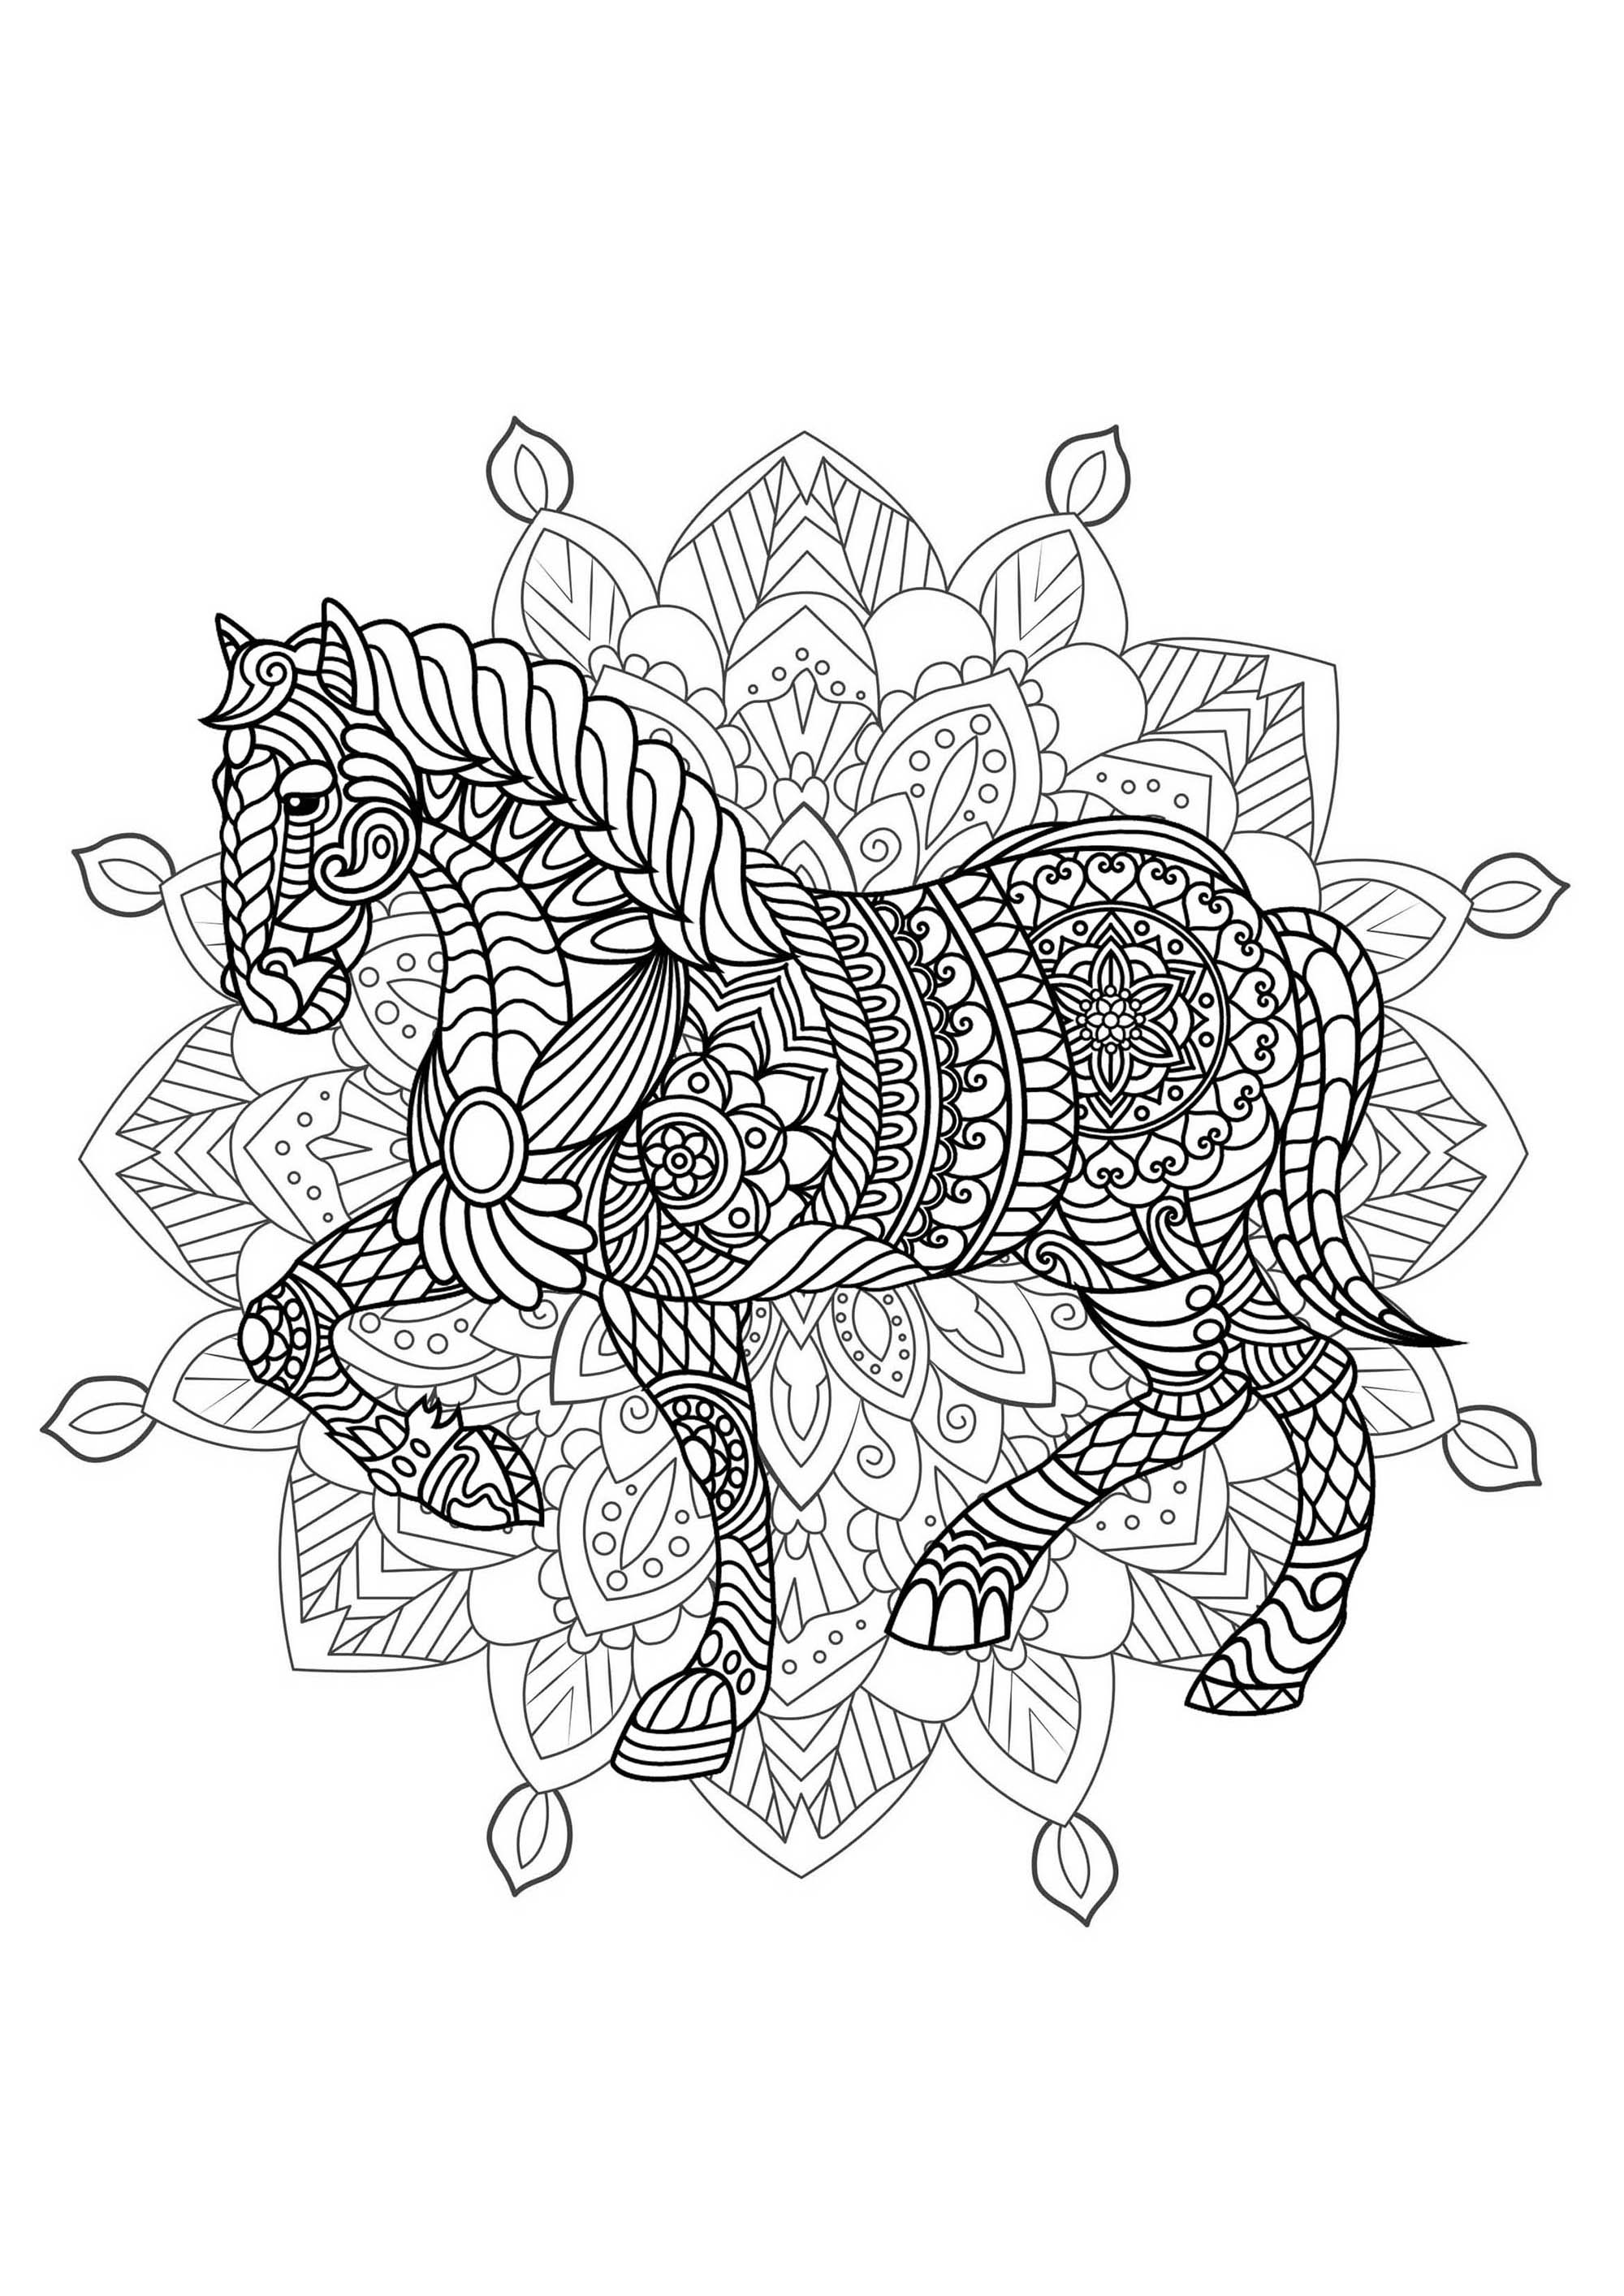 Cavalo e Mandala - Prepare os seus marcadores e lápis para colorir esta Mandala cheia de pequenos pormenores e áreas interligadas.